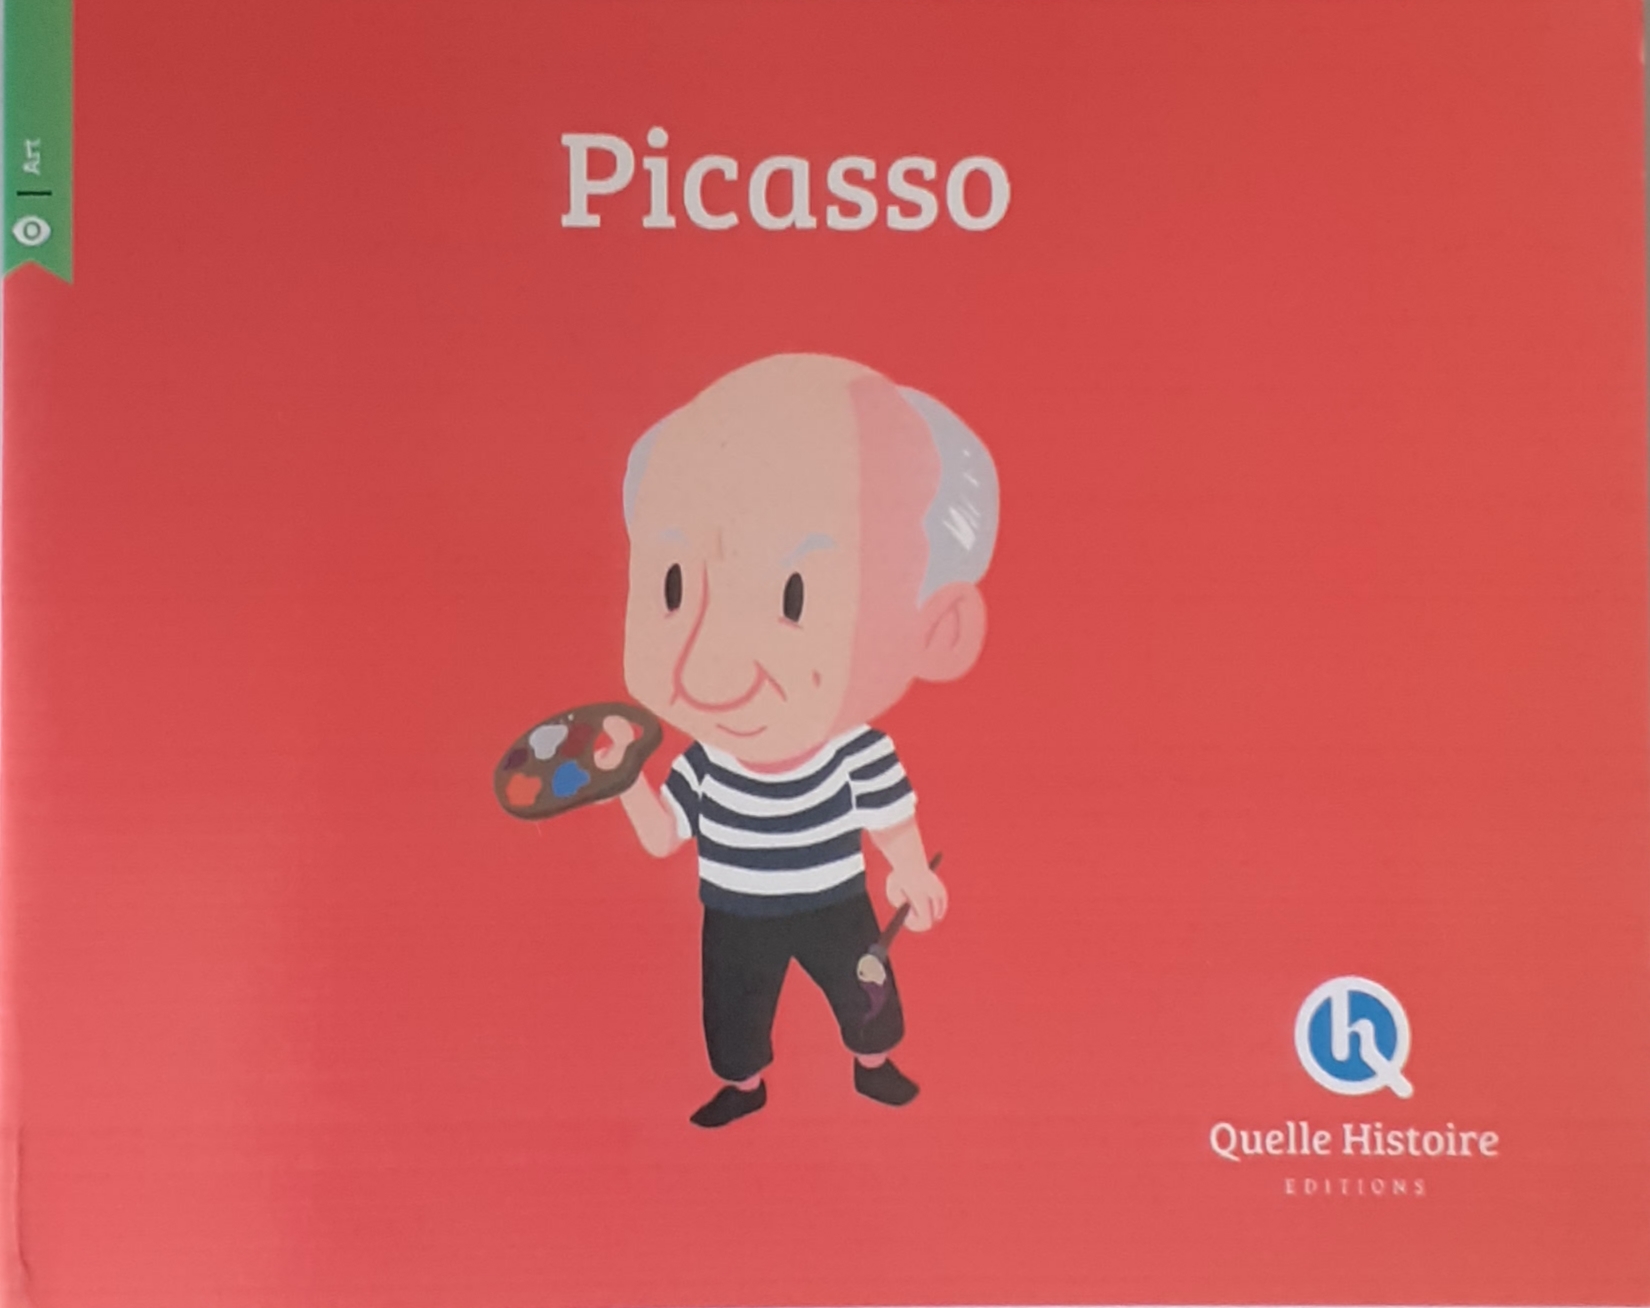 کتاب داستان فرانسه پکاسو picasso